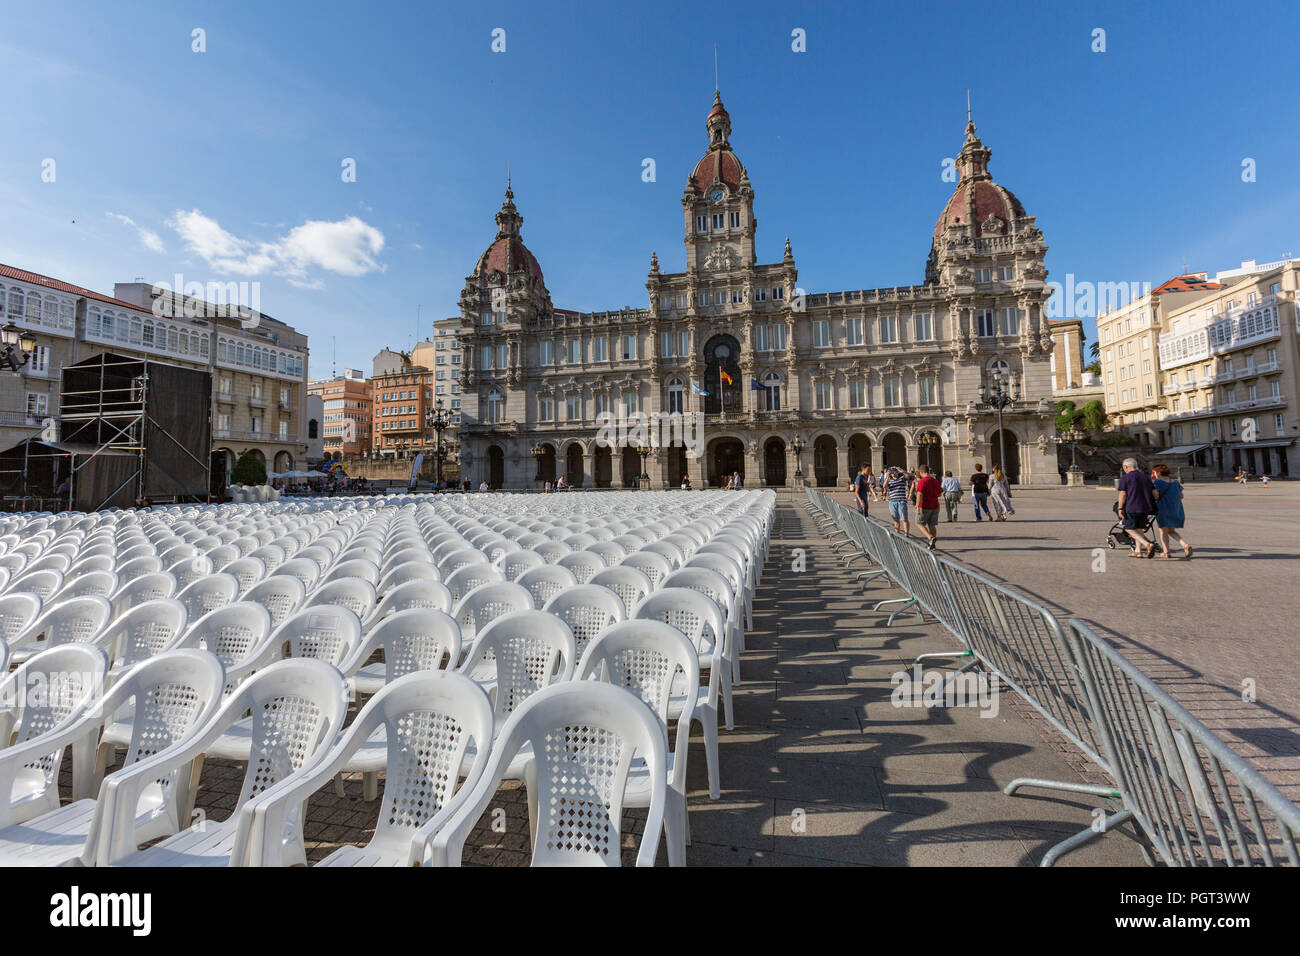 Weiße Plastikstühle für ein Konzert in der Plaza de María Pita, Maria Pita Square, A Coruña, Galizien, Spanien Stockfoto